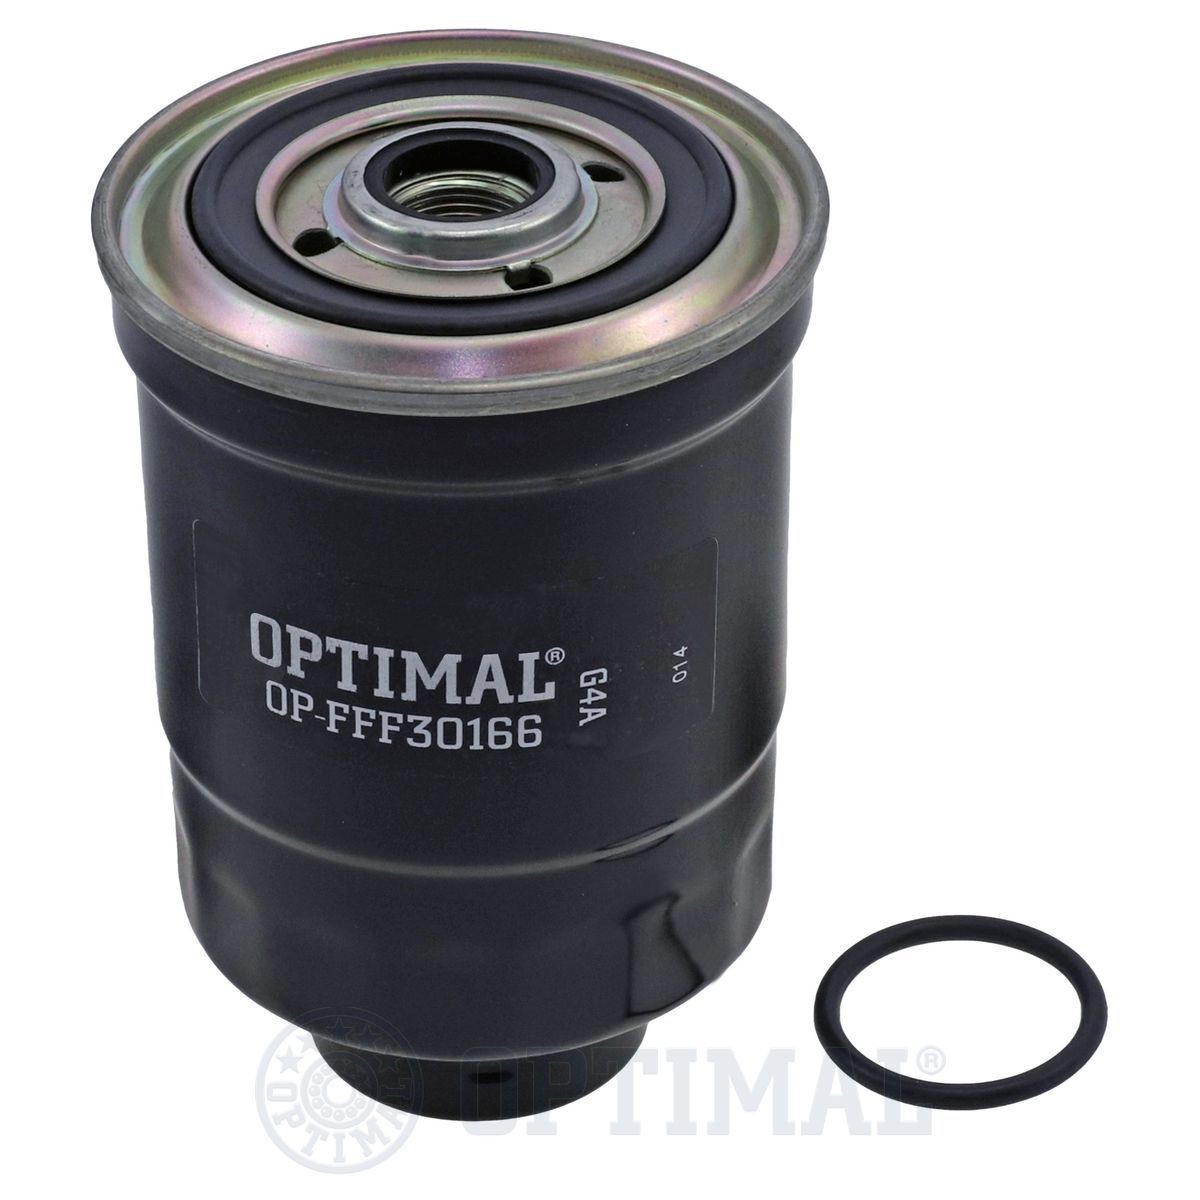 OPTIMAL OP-FFF30166 Fuel filter 98 037 480